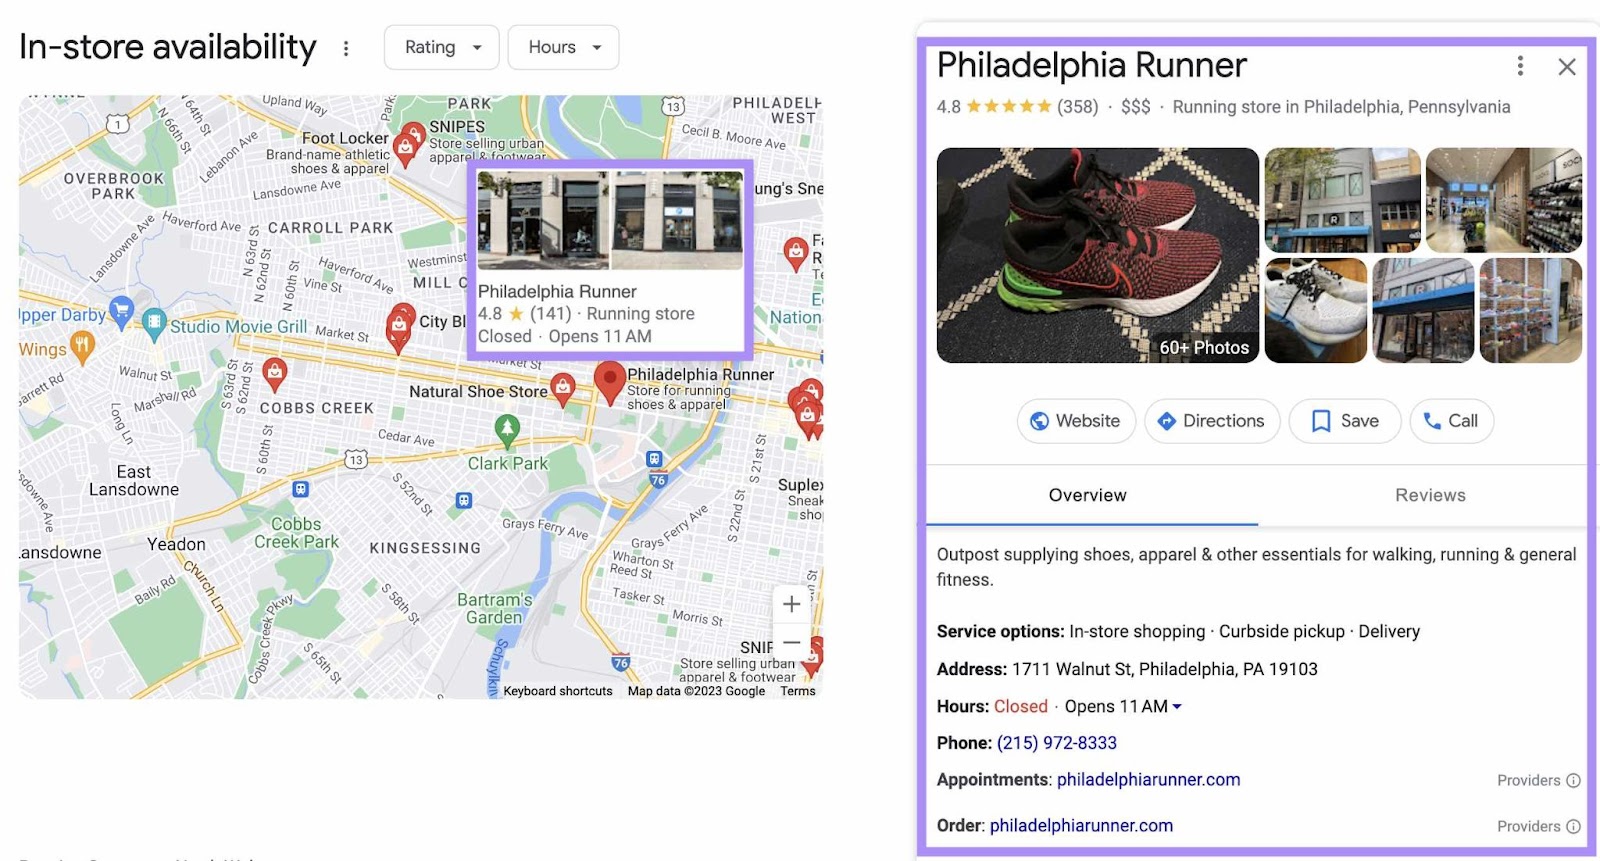 Google Business Profile for "Philadelphia Runner"